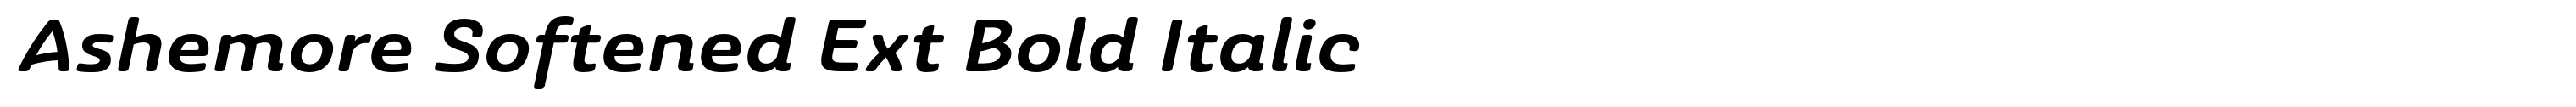 Ashemore Softened Ext Bold Italic